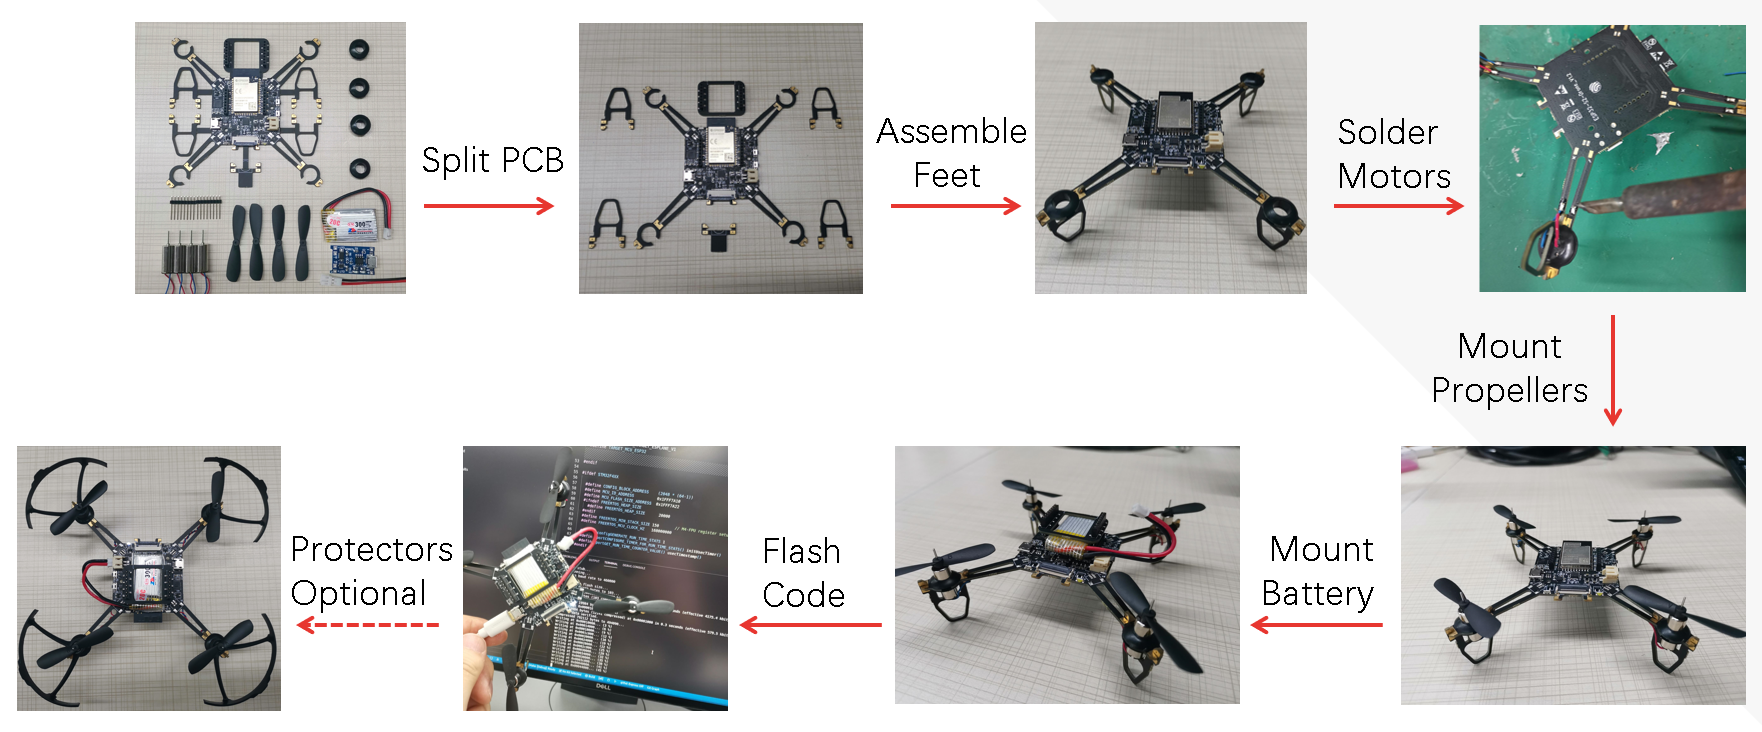 ESP-Drohne: Einen ESP32-basierten Quadrocopter für wenig Geld bauen